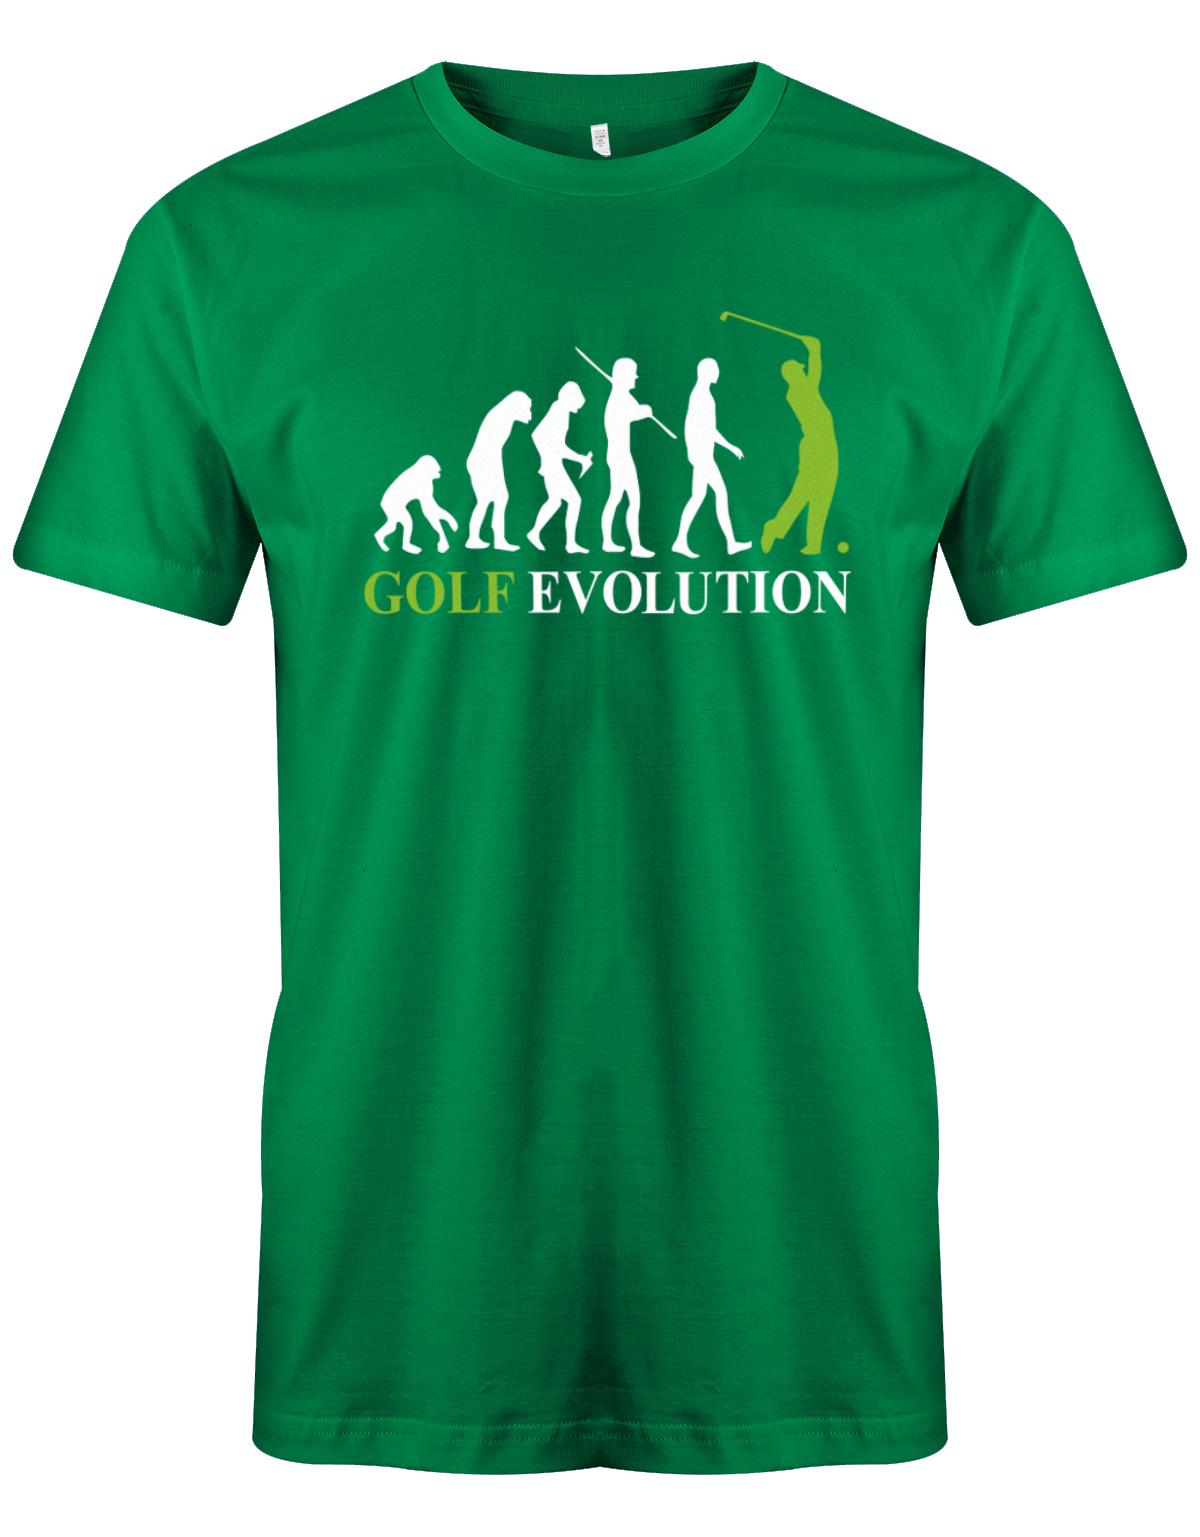 Golf-evolution-Herren-Shirt-Gr-n